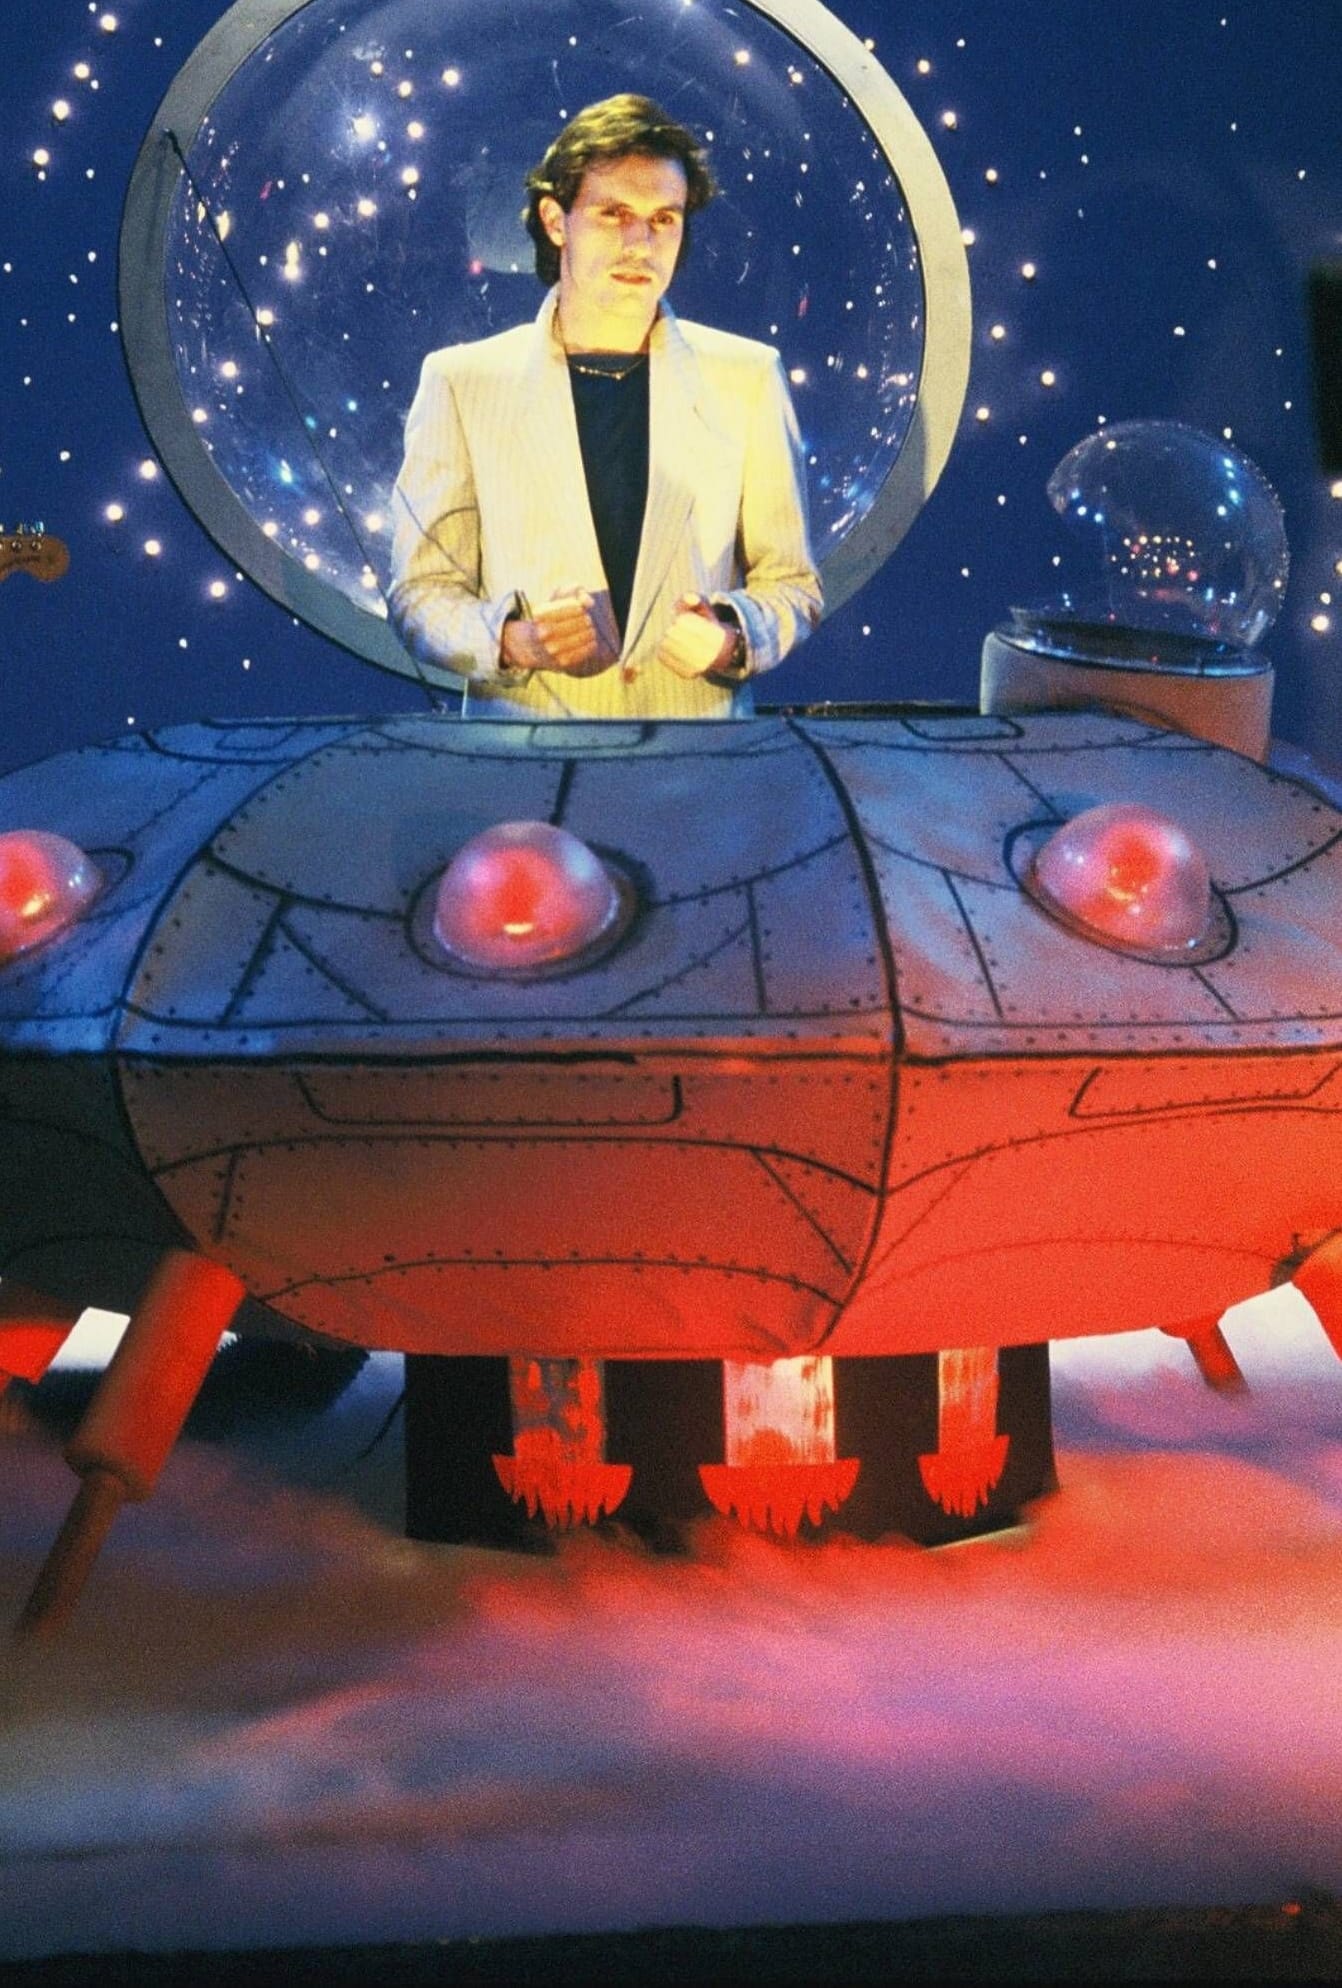 Sänger Peter Schilling bei einem Fernsehauftritt als Major Tom in einem Raumschiff.